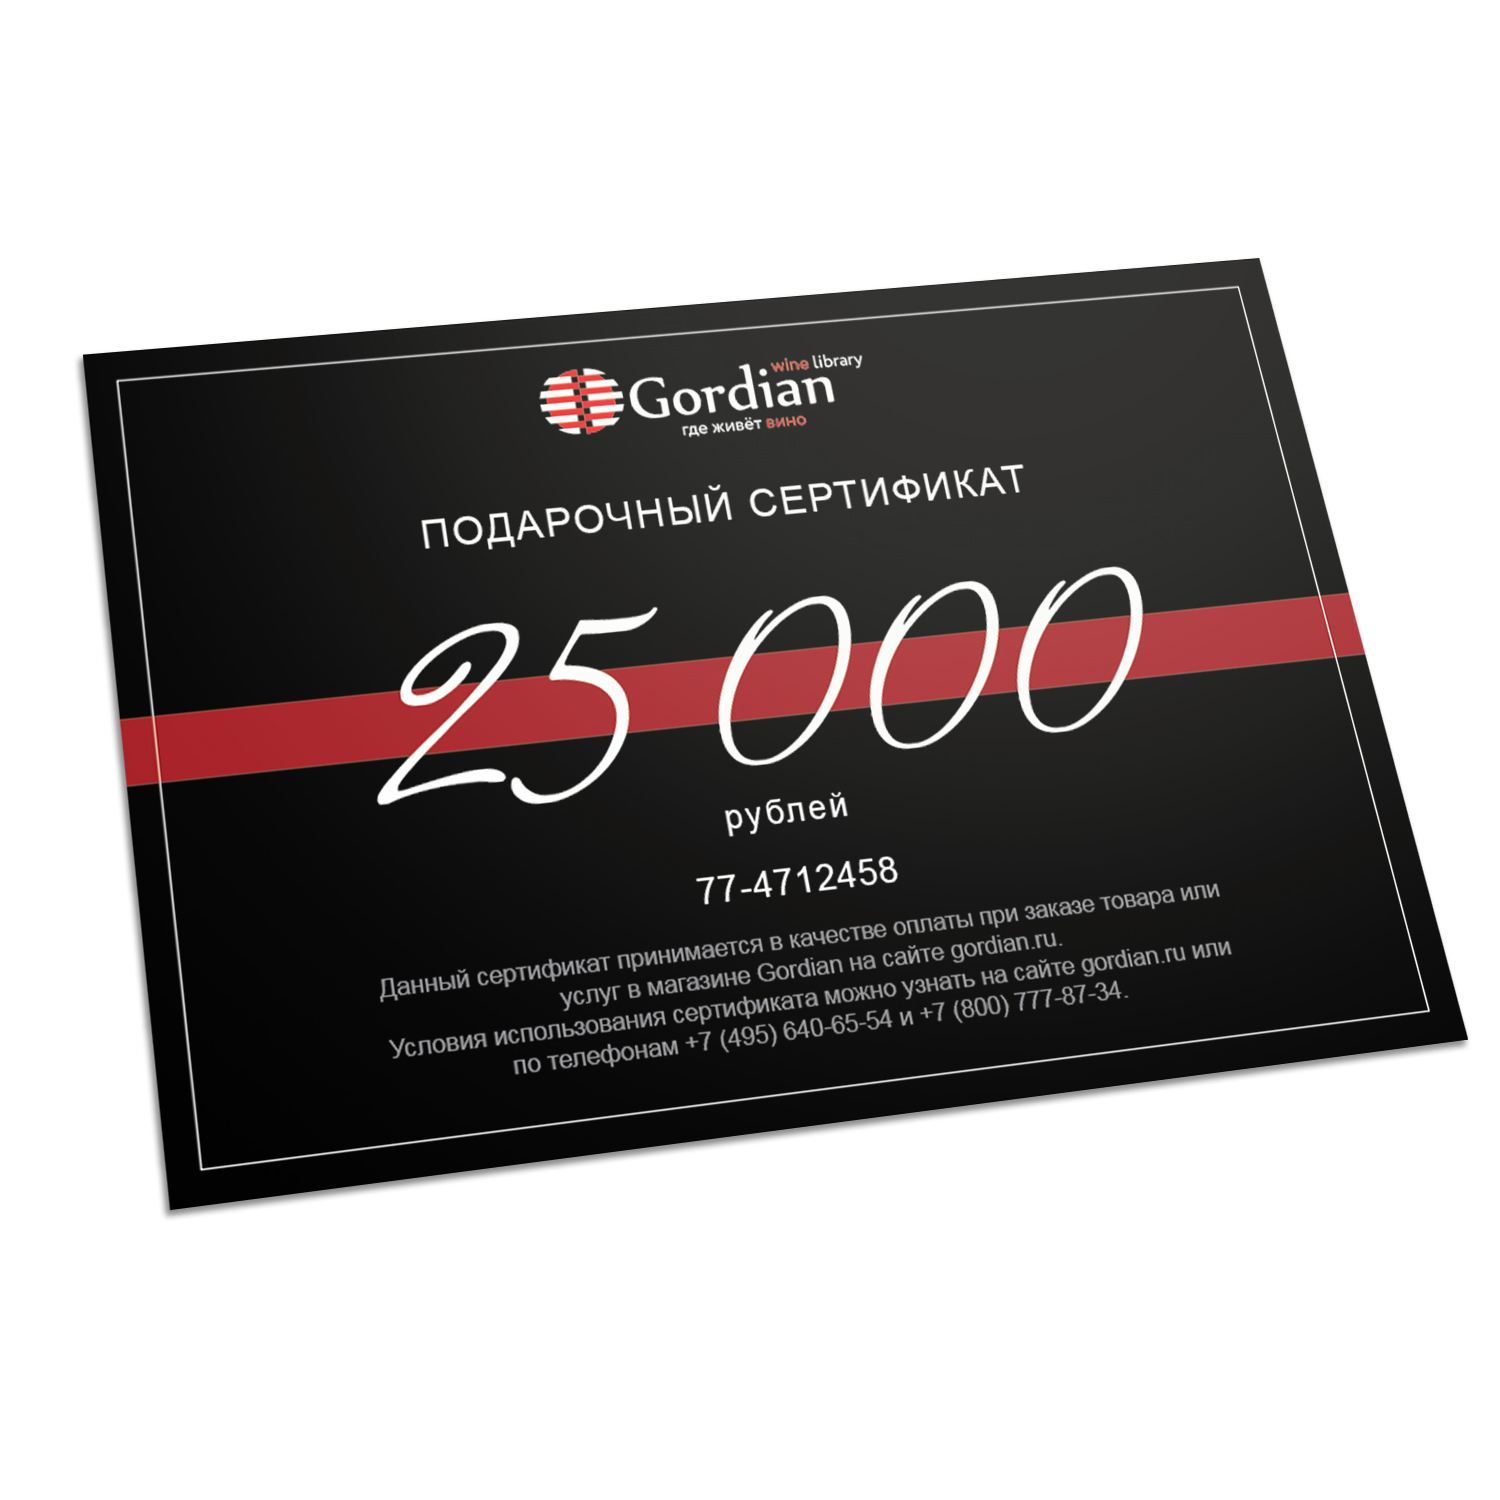 Подарочный сертификат Gordian Wine Номинал 25.000 руб.